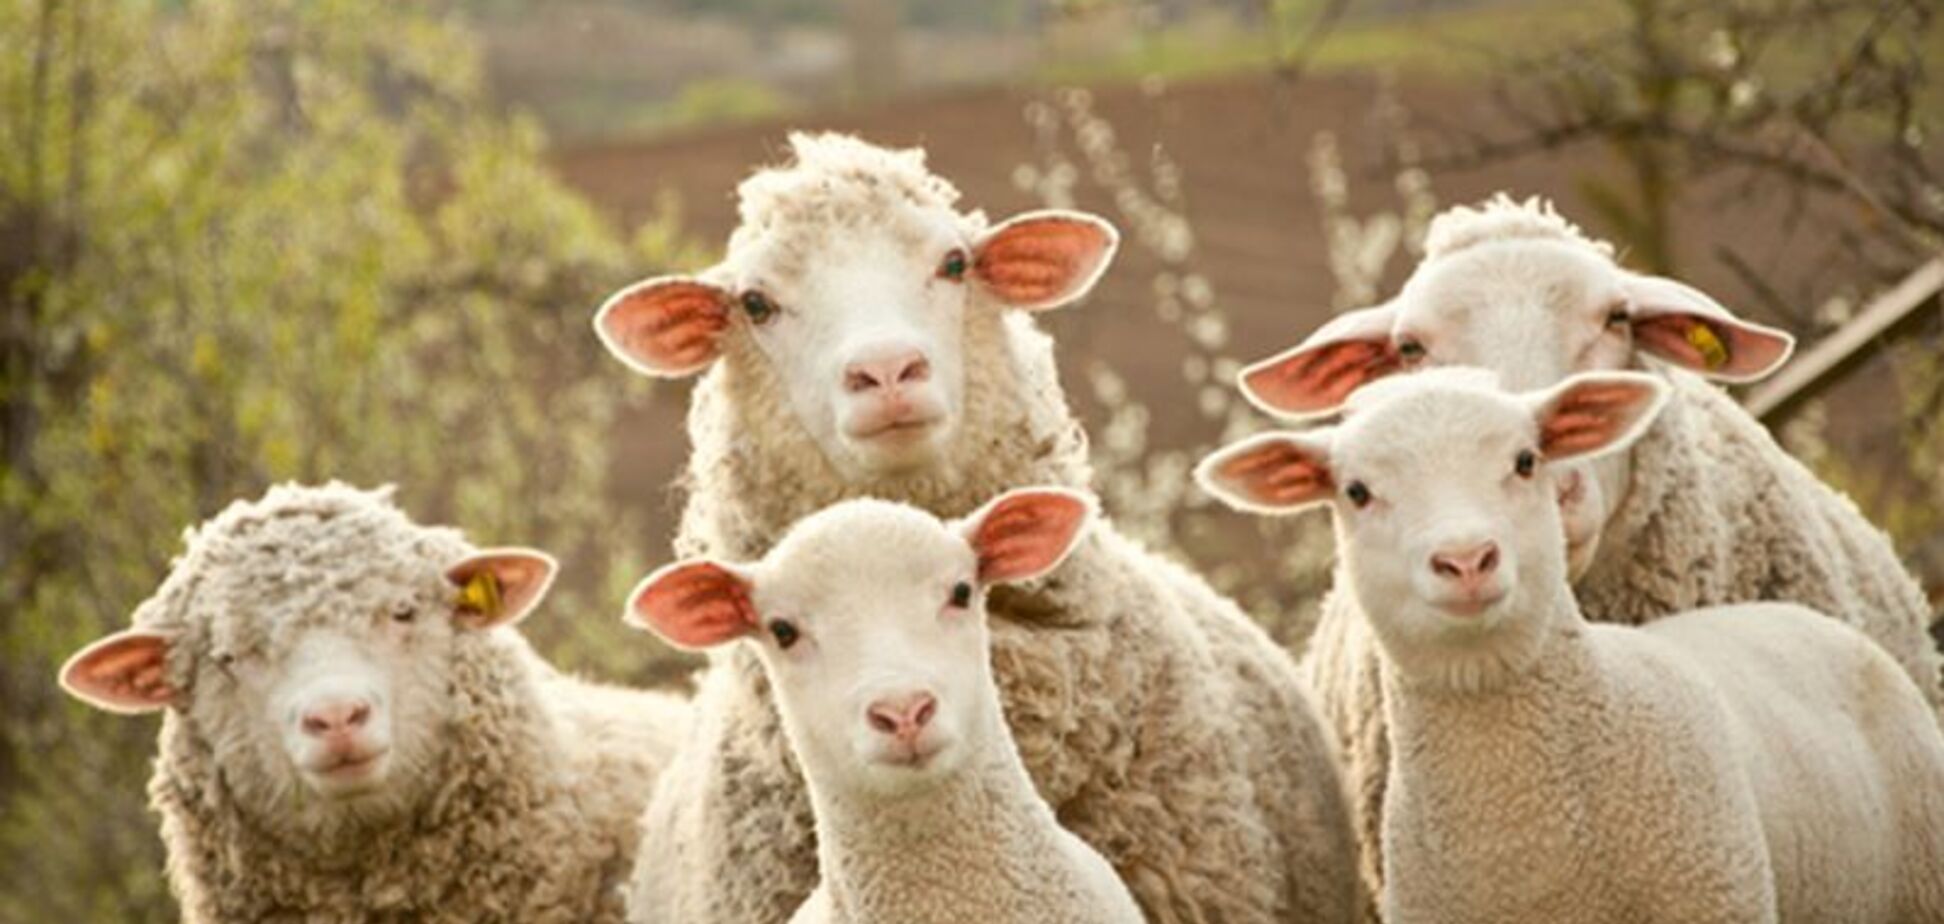 Британские студенты снялись без одежды с овцами: возник громкий скандал. Фото